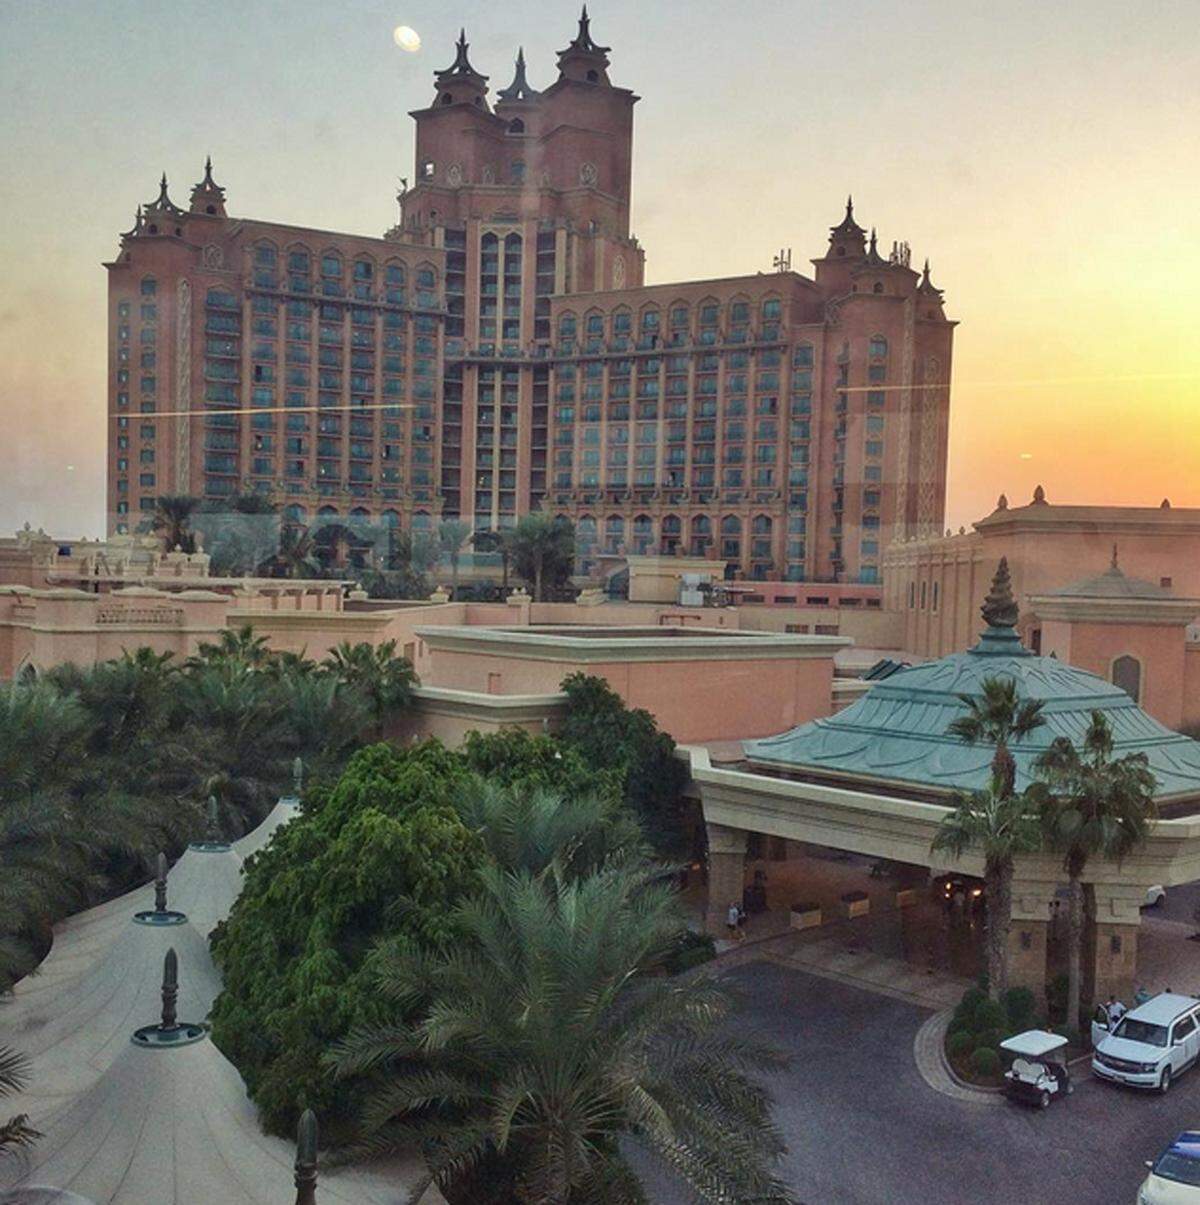 Das riesige Atlantis-Hotel in Dubai macht sich auf Fotos richtig gut. Kein Wunder also, dass es auch auf Instagram oft geteilt wird.